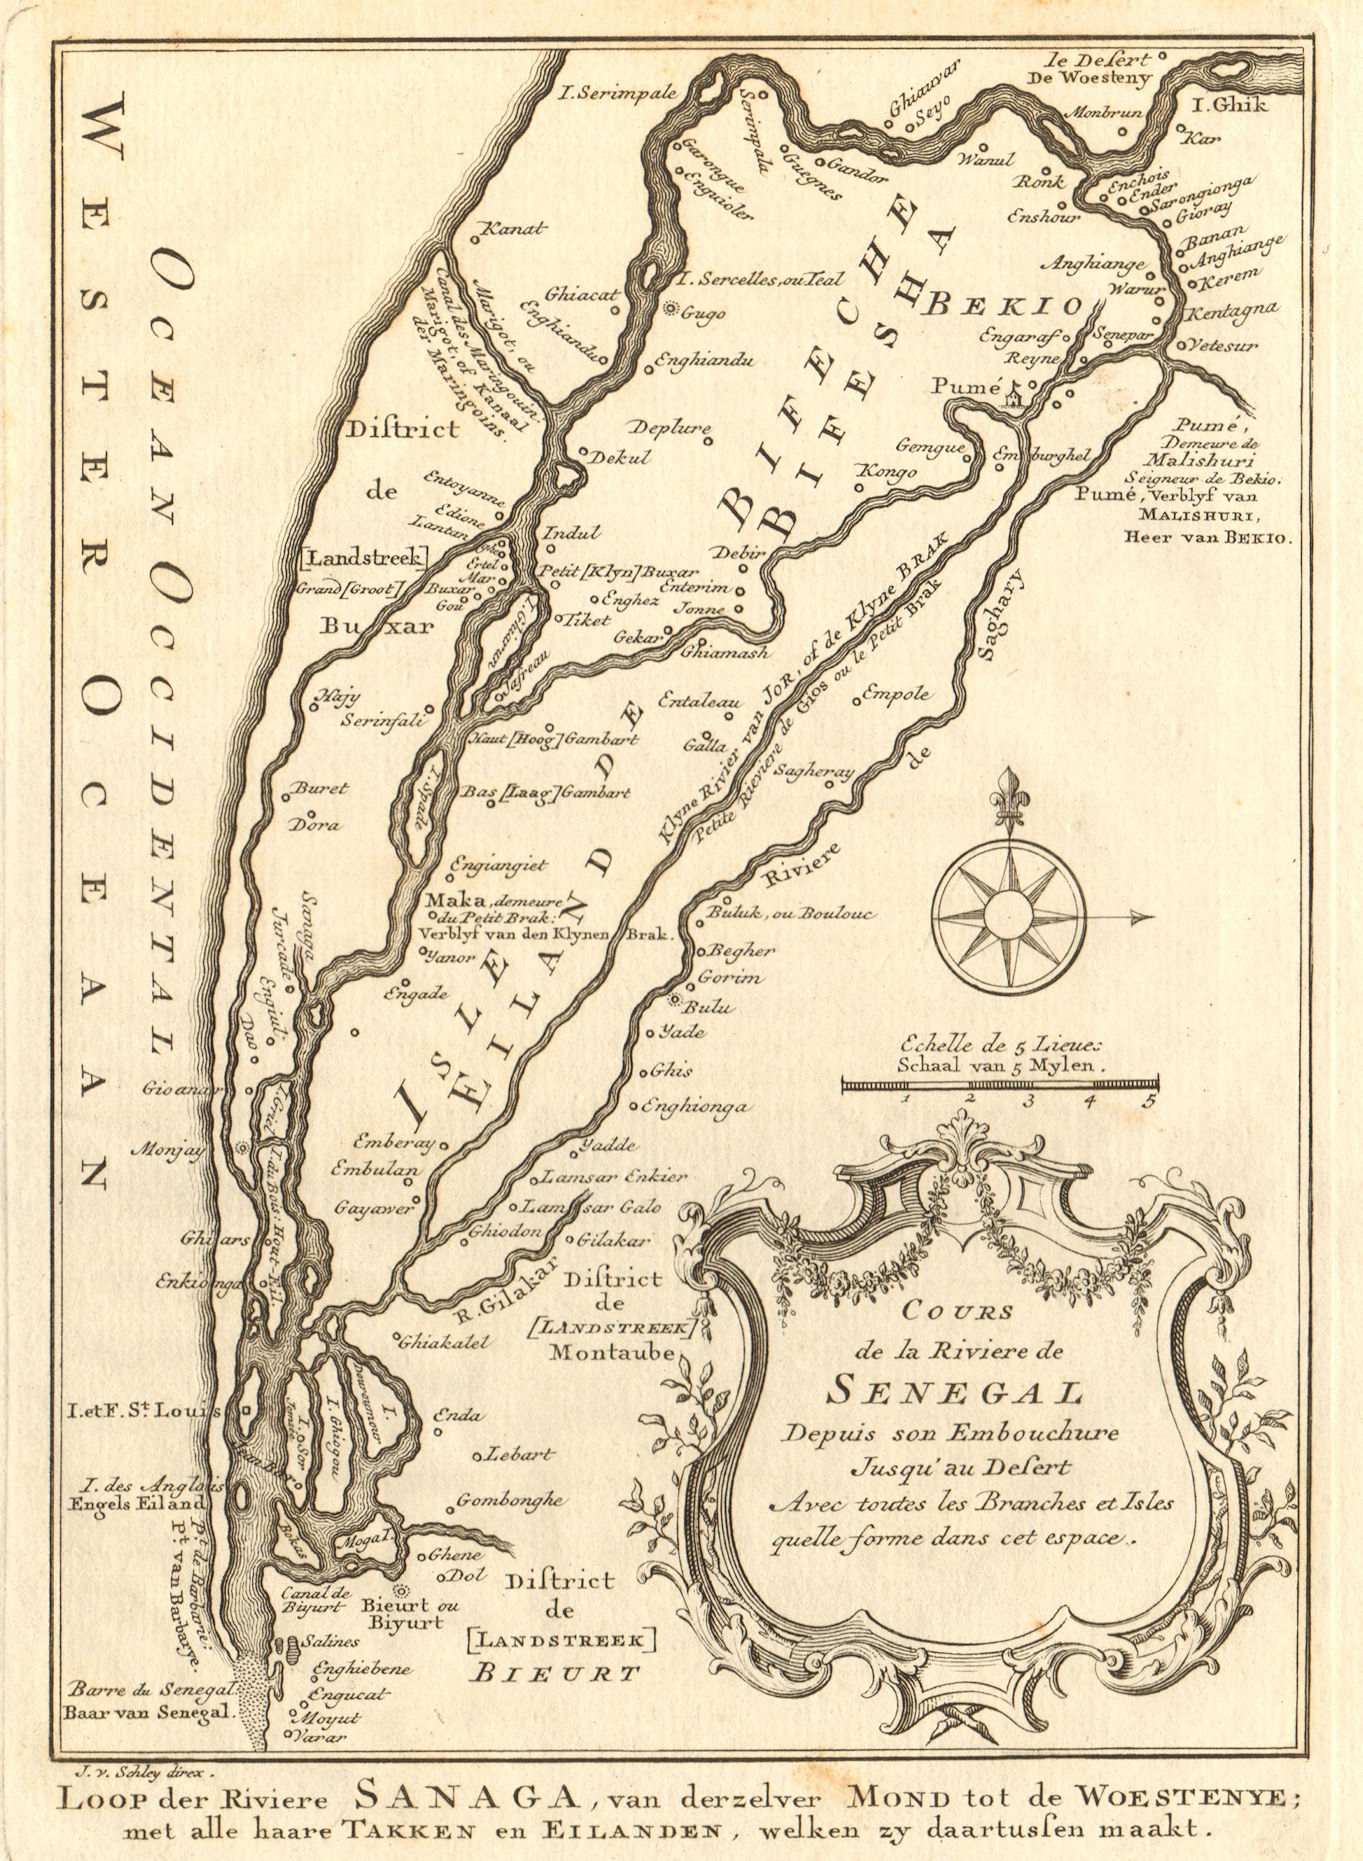 Associate Product 'Cours de la Rivière du Sénégal' Senegal River 1st sheet. BELLIN/SCHLEY 1747 map